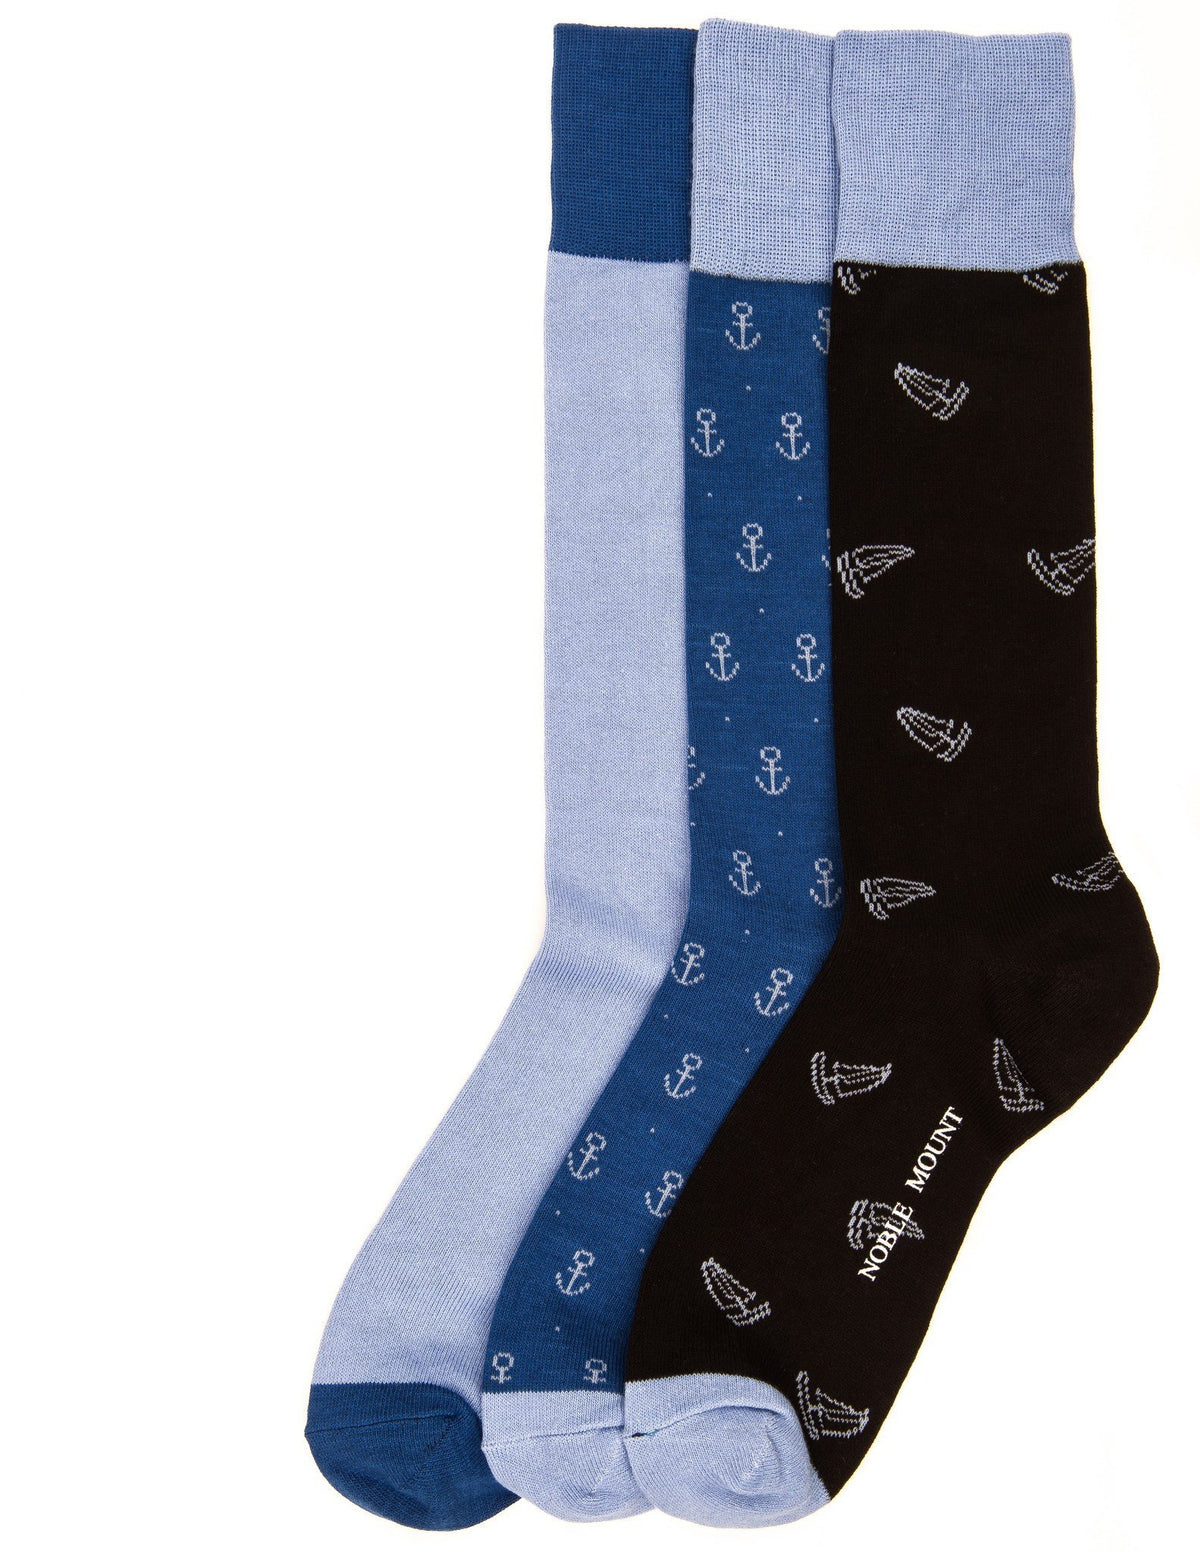 Men's Combed Cotton Dress Socks 3-Pack - Set A14